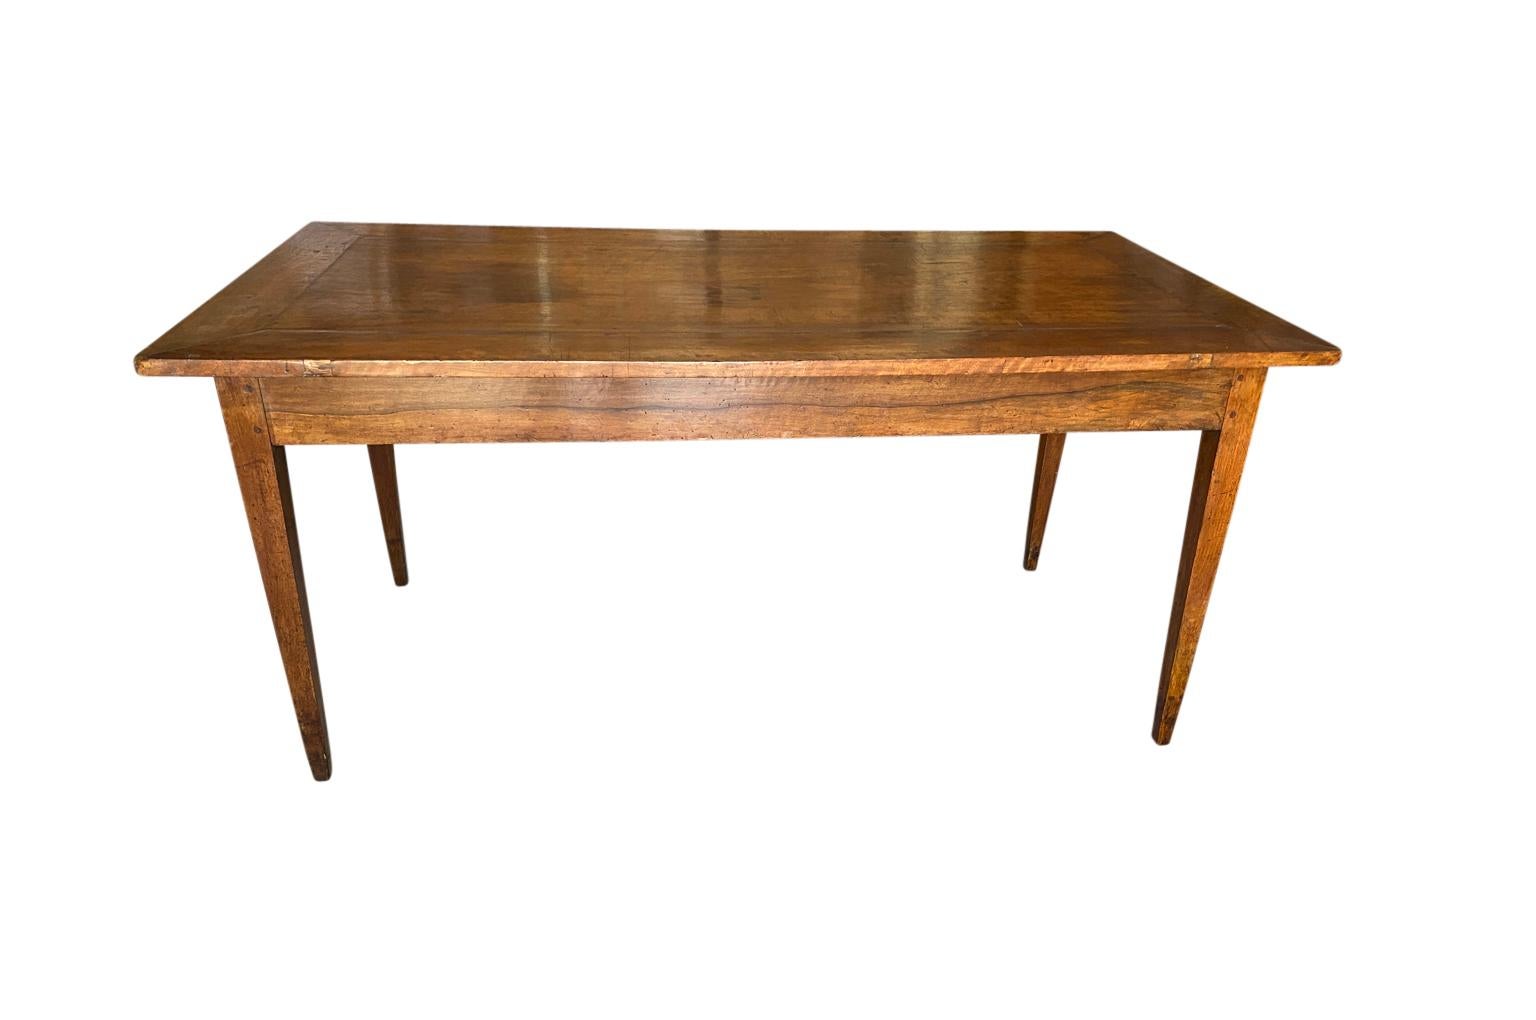 Ein wunderschöner Tisch aus dem 18. Jahrhundert - eine Konsole aus Venedig, Italien. Wunderschön konstruiert aus herrlichem Nussbaumholz mit sehr minimalistischen Linien. Der Tisch hat 2 Schubladen - eine an jedem Ende und elegante, konische Beine.